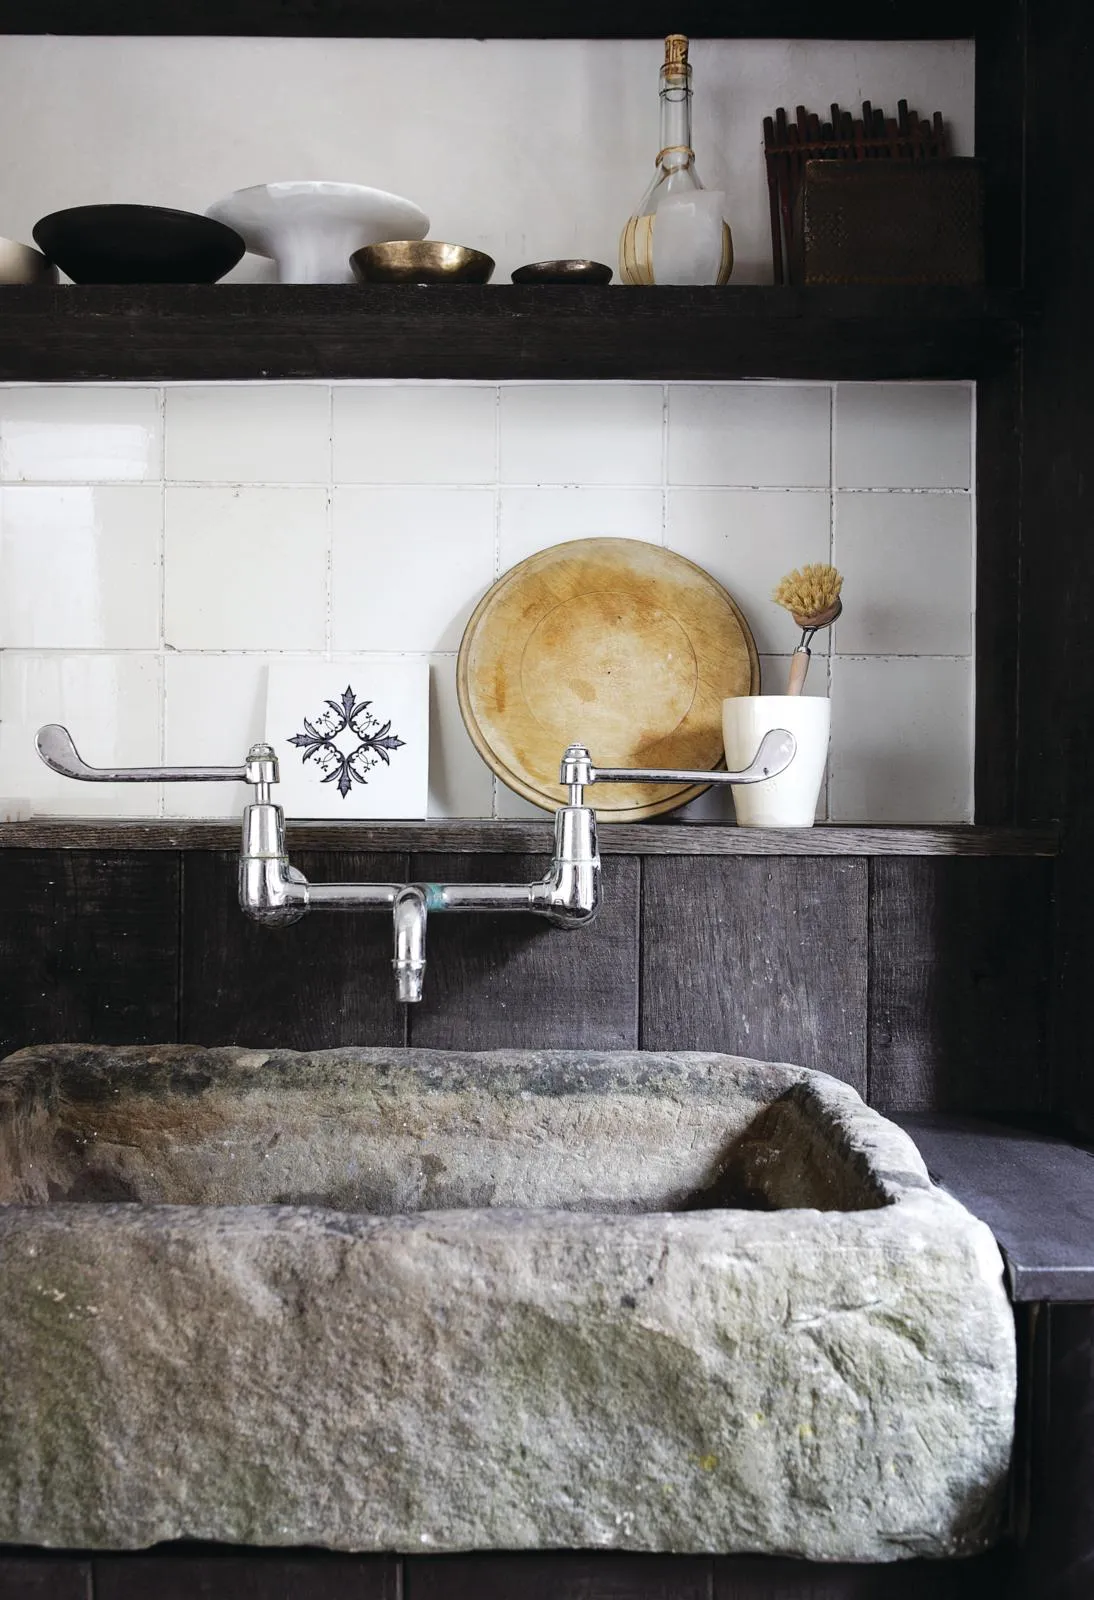 Victorian artisan cottage kitchen sink